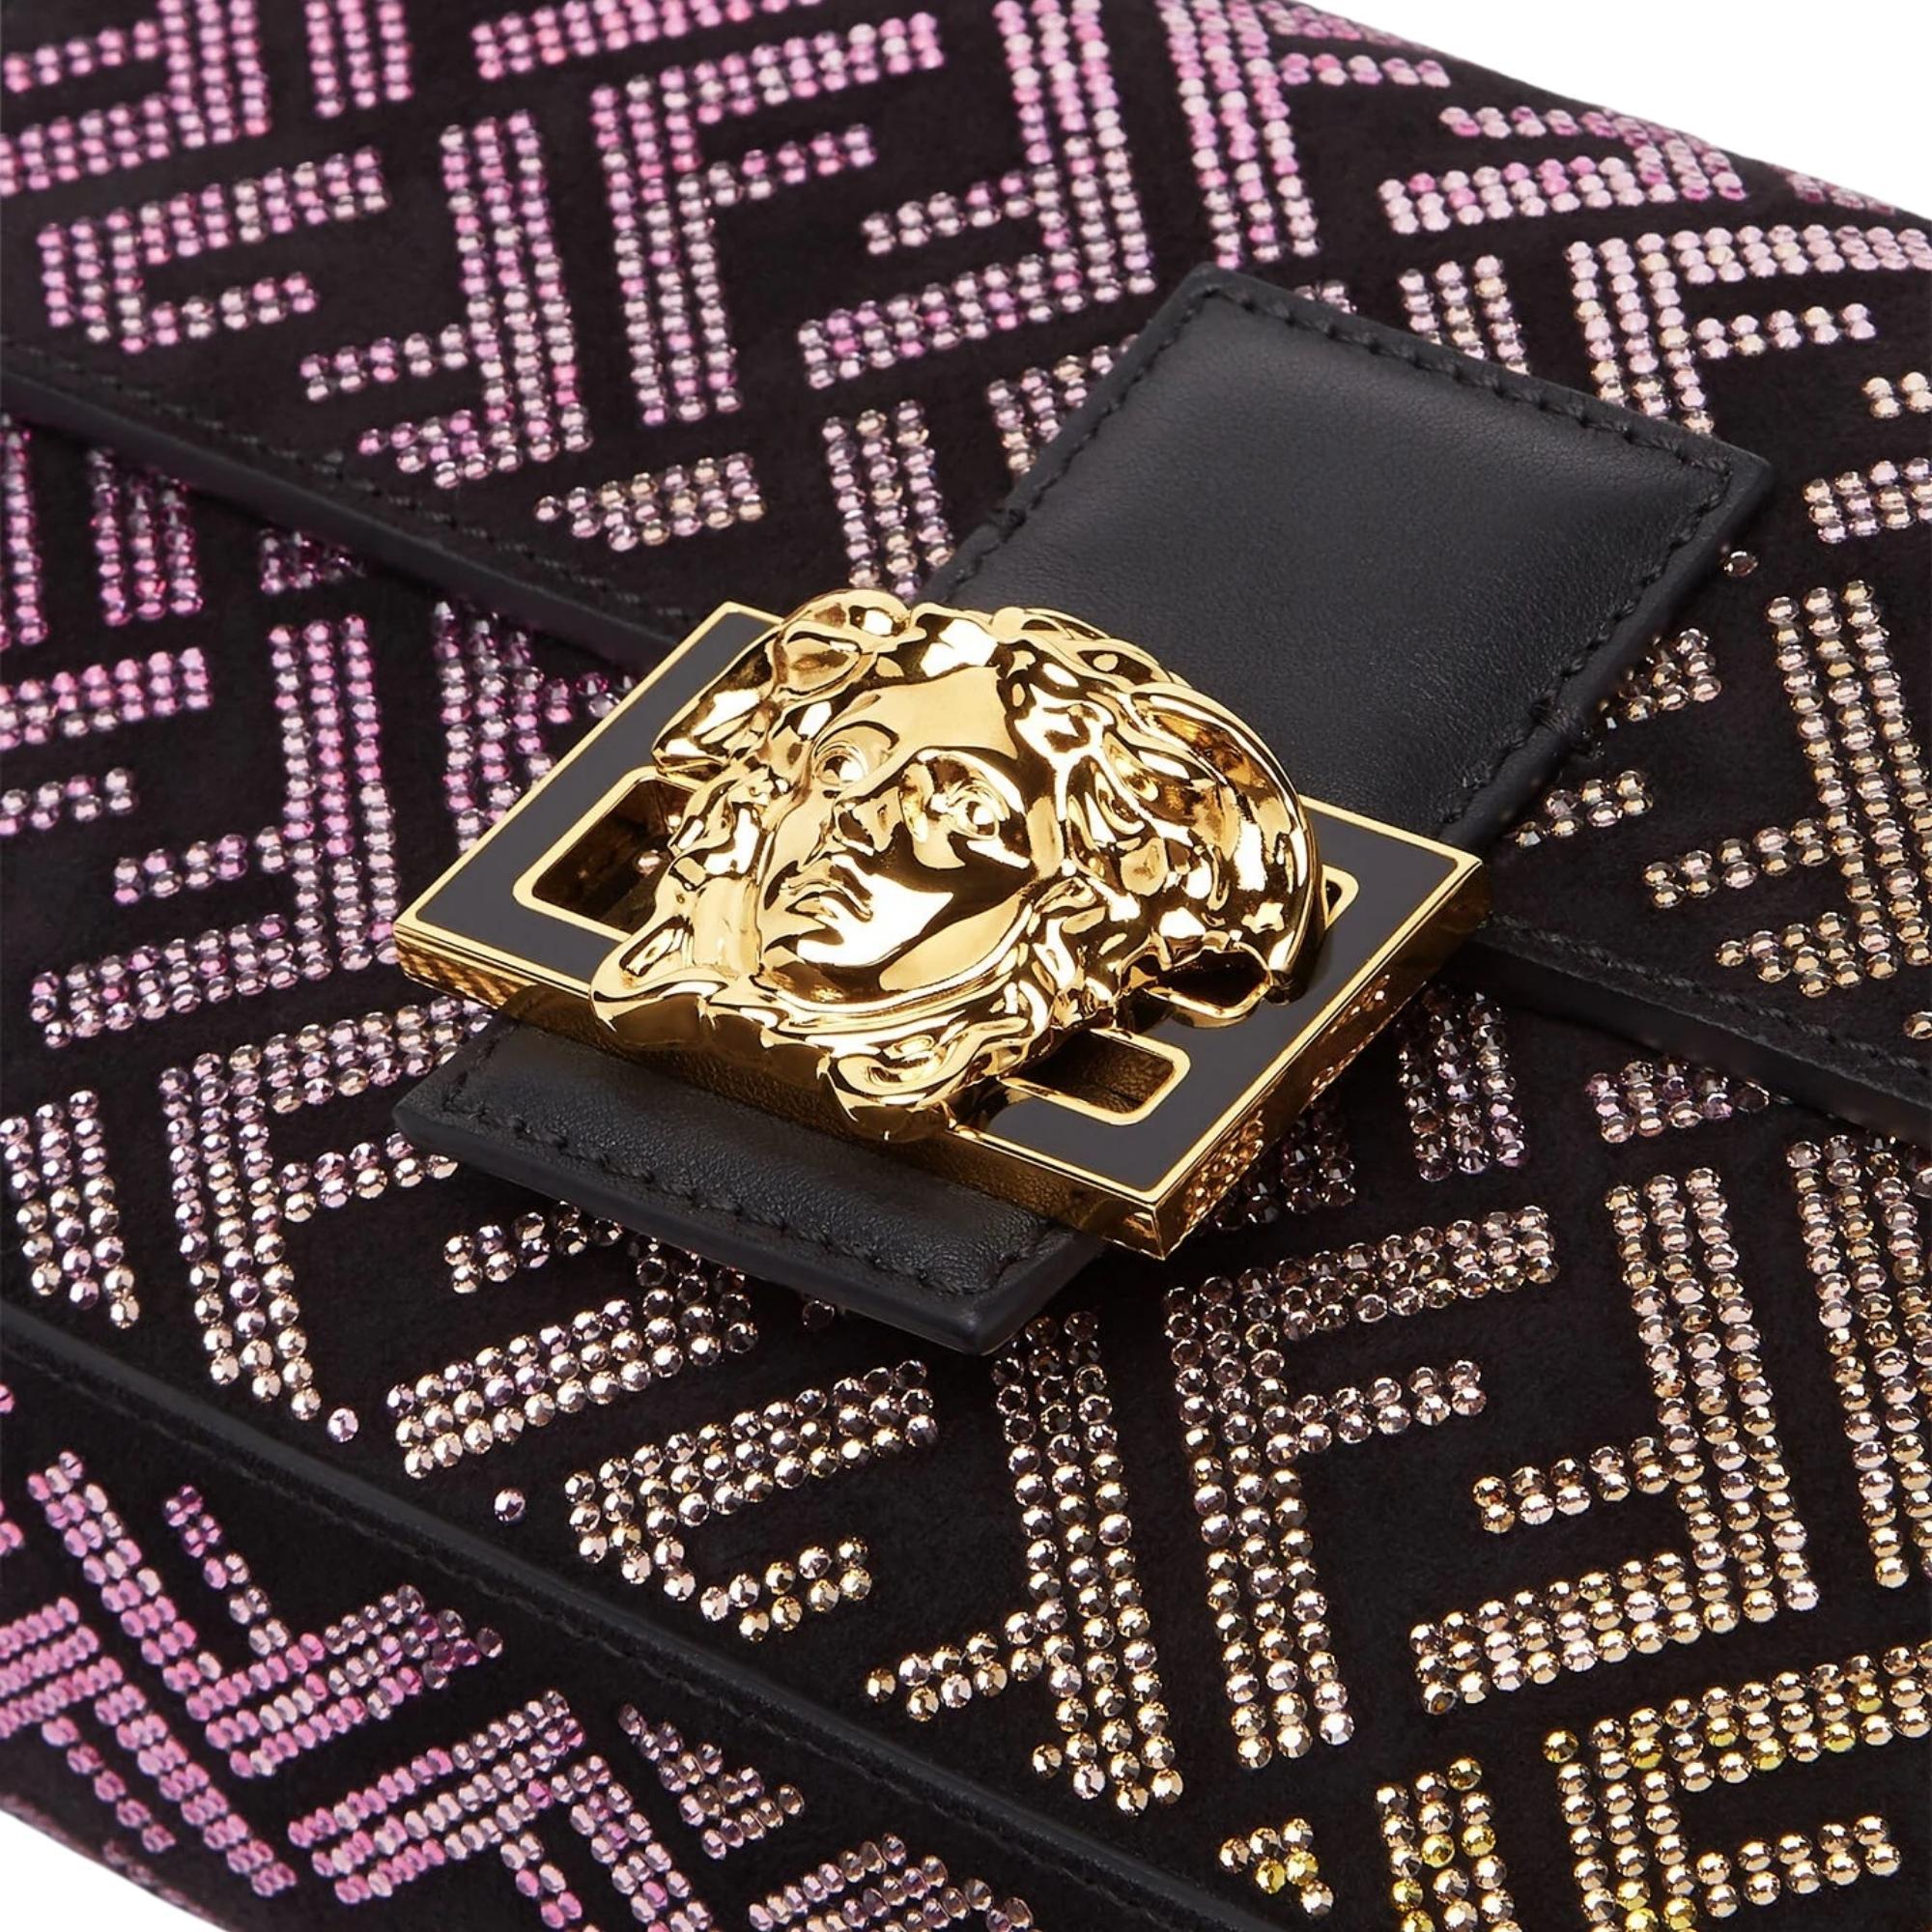 Black Fendi X Versace Fendace Gradient Crystal Baguette Shoulder Bag